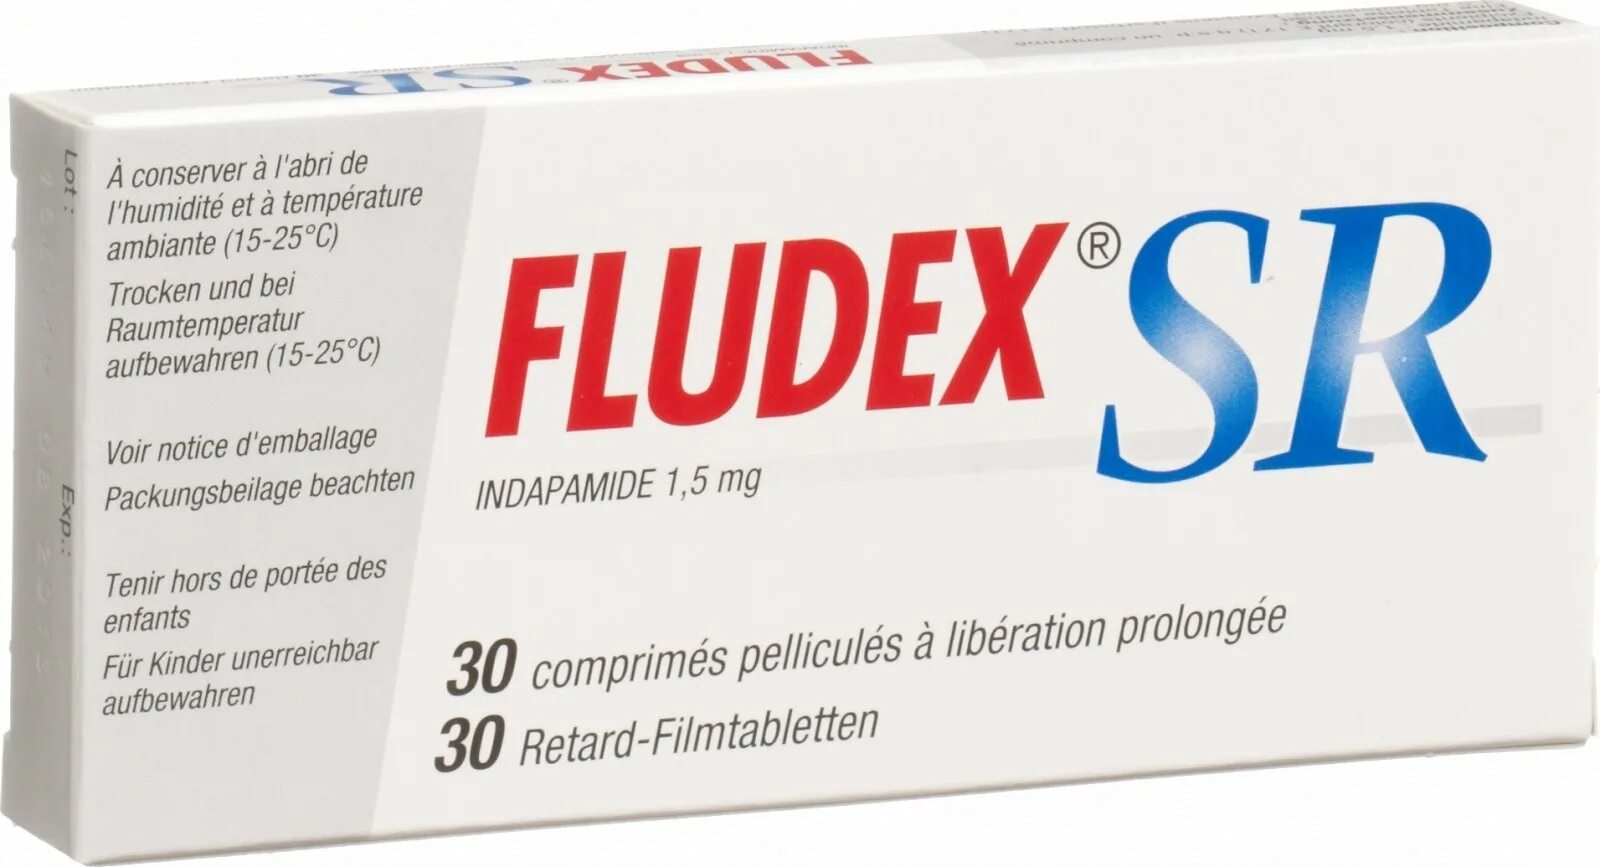 FLUDEX SR. FLUDEX 1.5 MG. FLUDEX 2,5. Таблетки FLUDEX SR. Арифам 5 мг купить